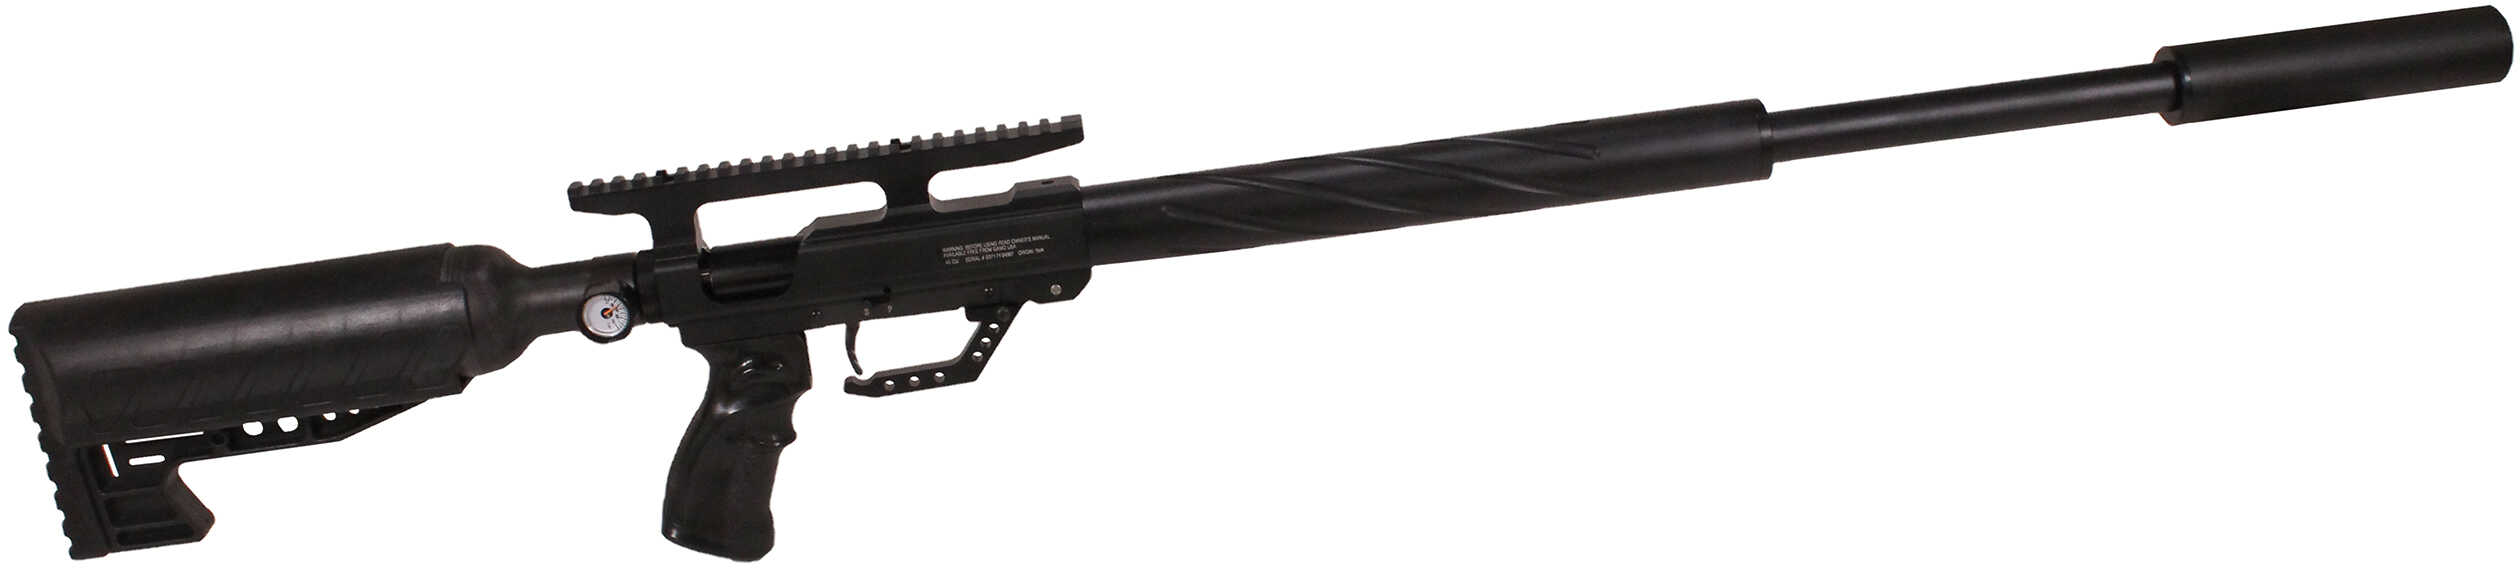 Gamo TC-45 Big Bore PCP Air Rifle .45 Caliber 900Fps